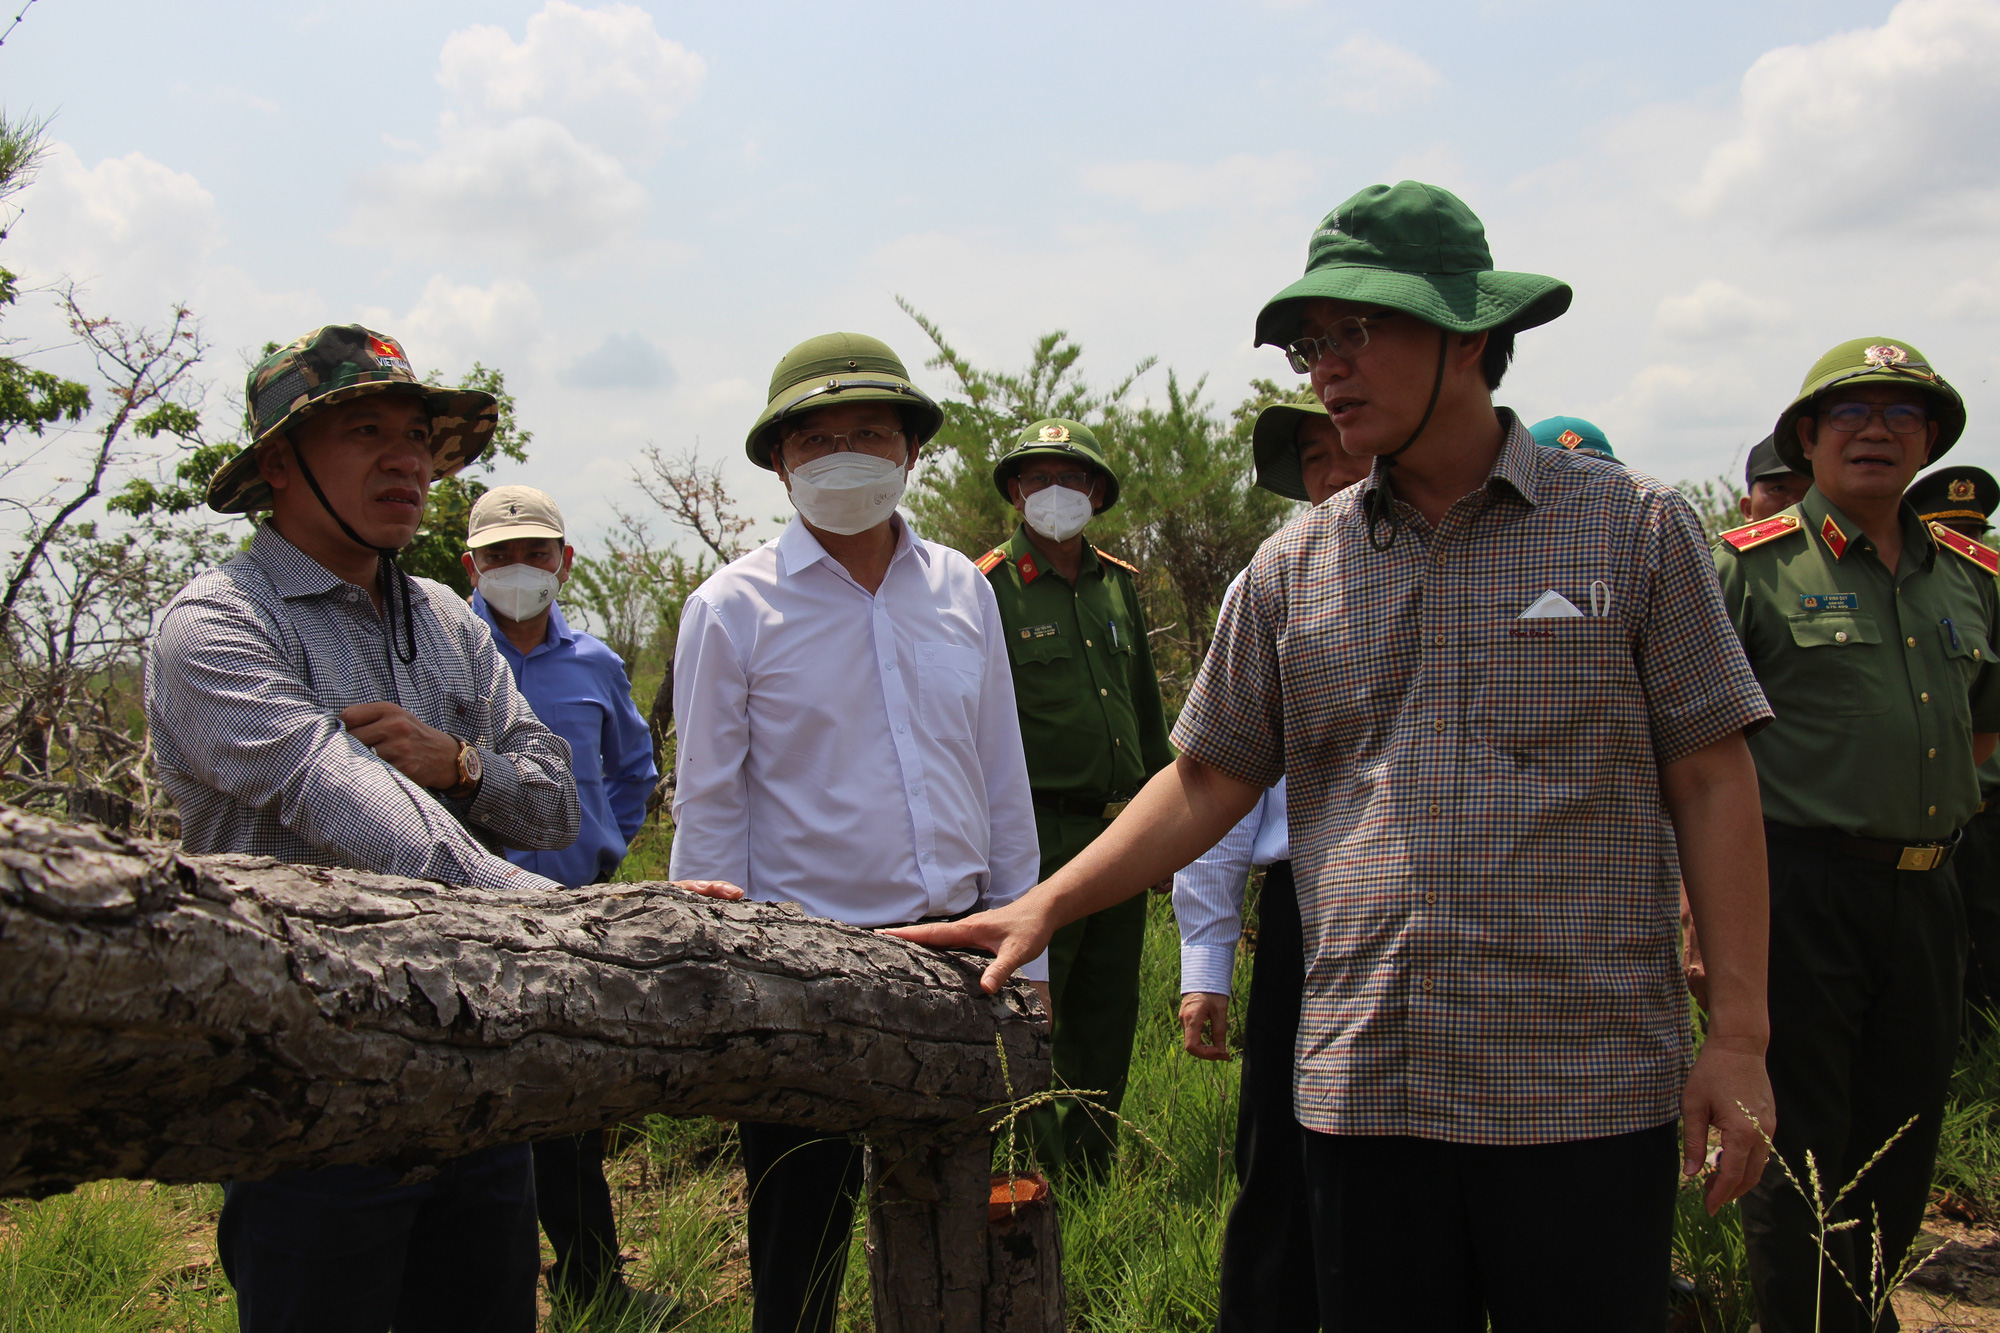 Bí thư, chủ tịch tỉnh Đắk Lắk kiểm tra hiện trường vụ phá rừng gây xôn xao dư luận - Ảnh 2.